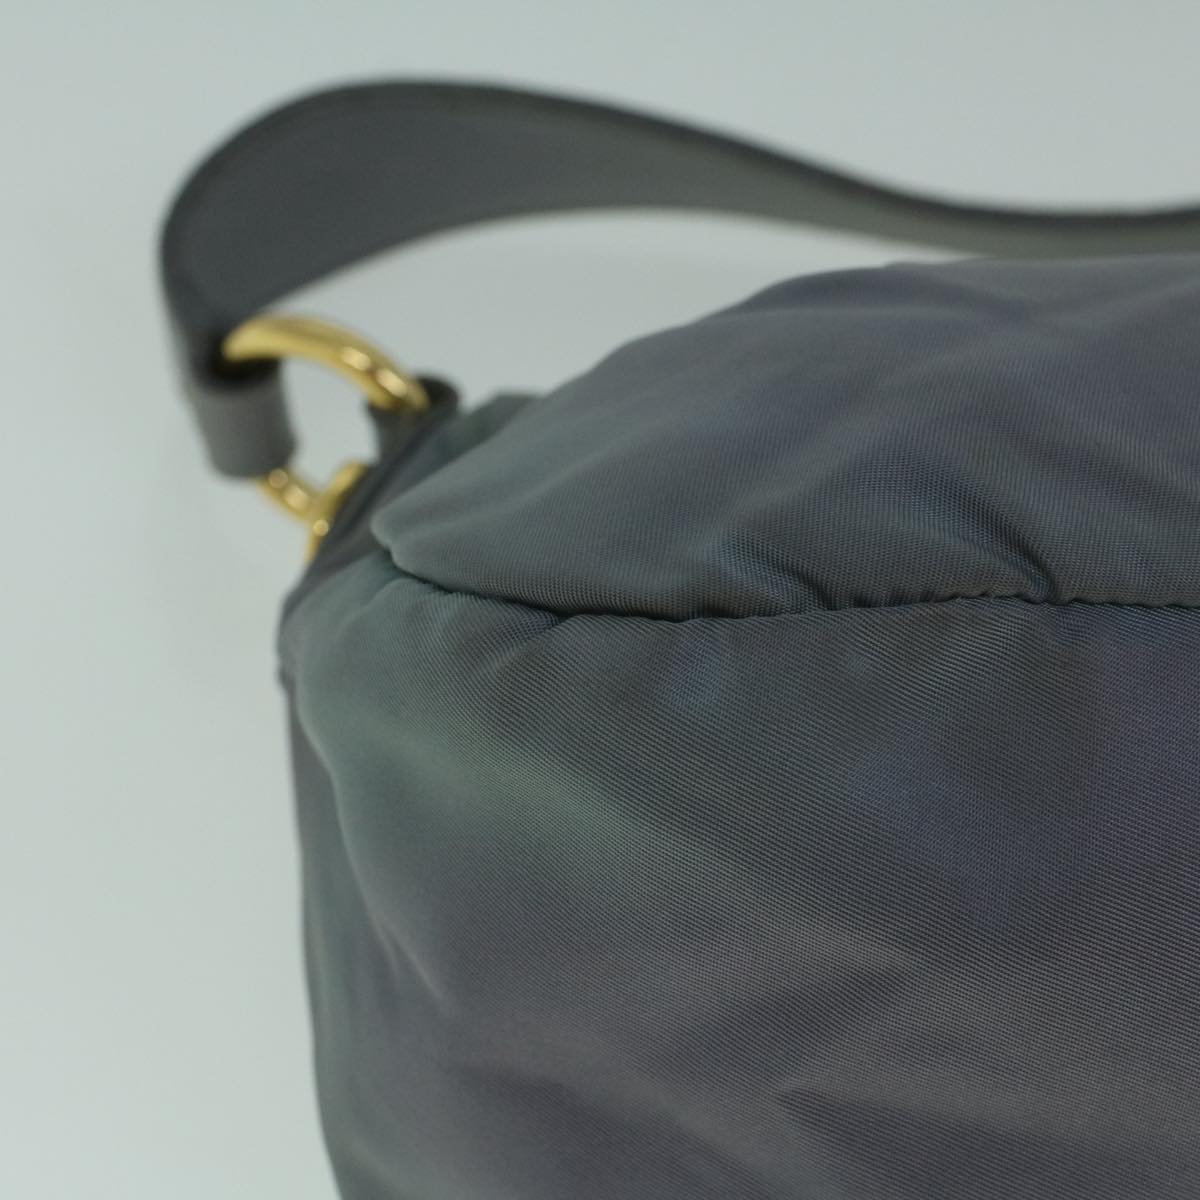 PRADA Hand Bag Nylon Light Blue Auth 60356